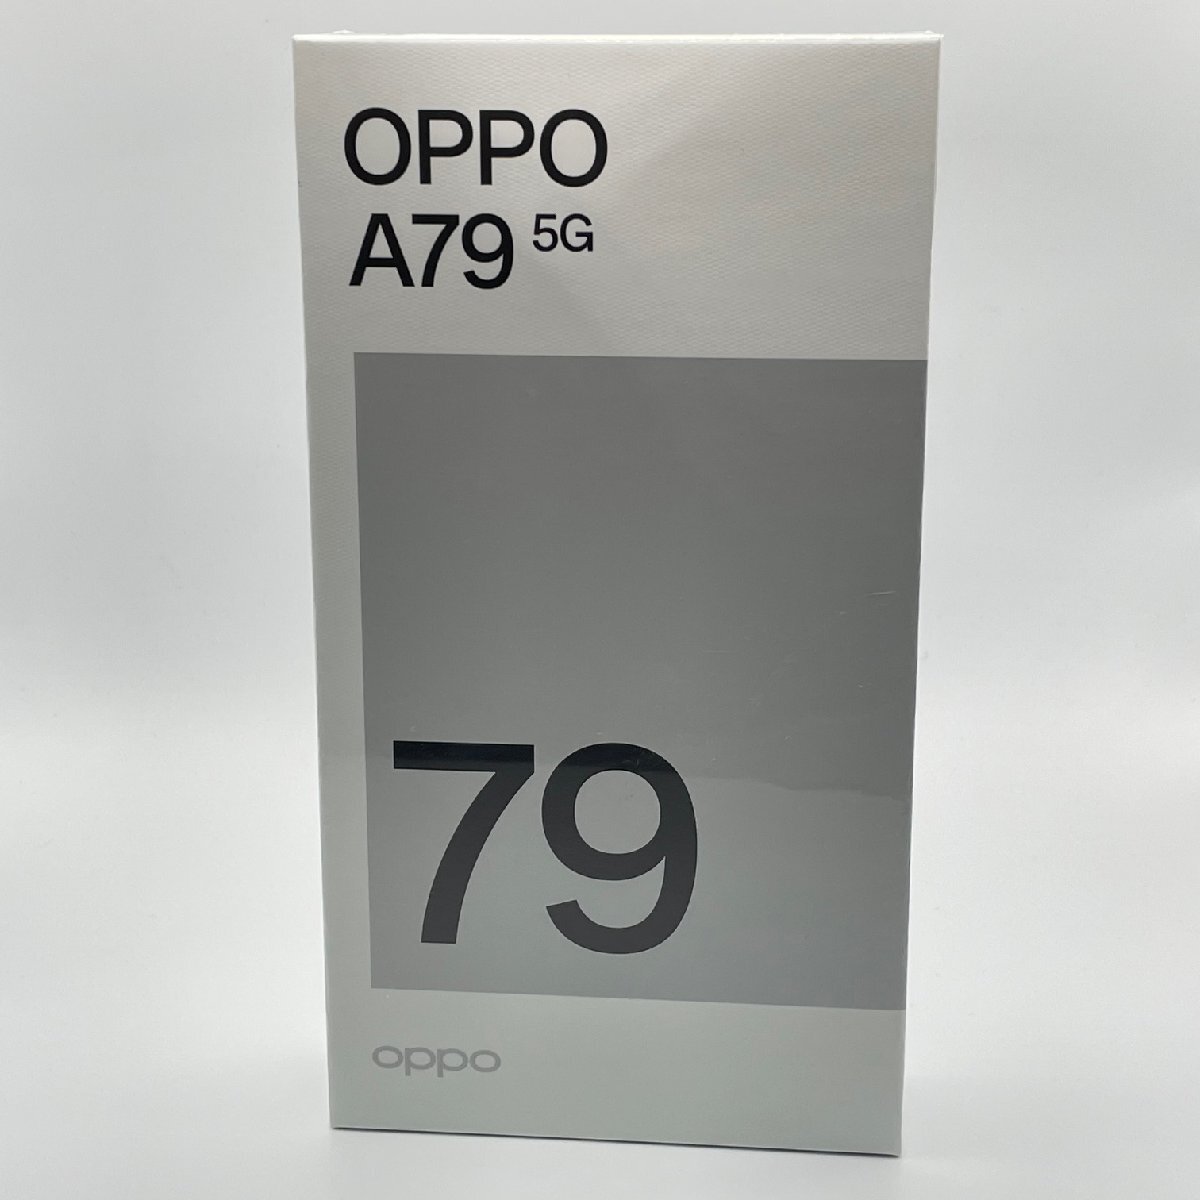 未開封品 OPPO A79 5G ミステリーブラック スマートフォン ワイモバイル SIMフリー_画像1